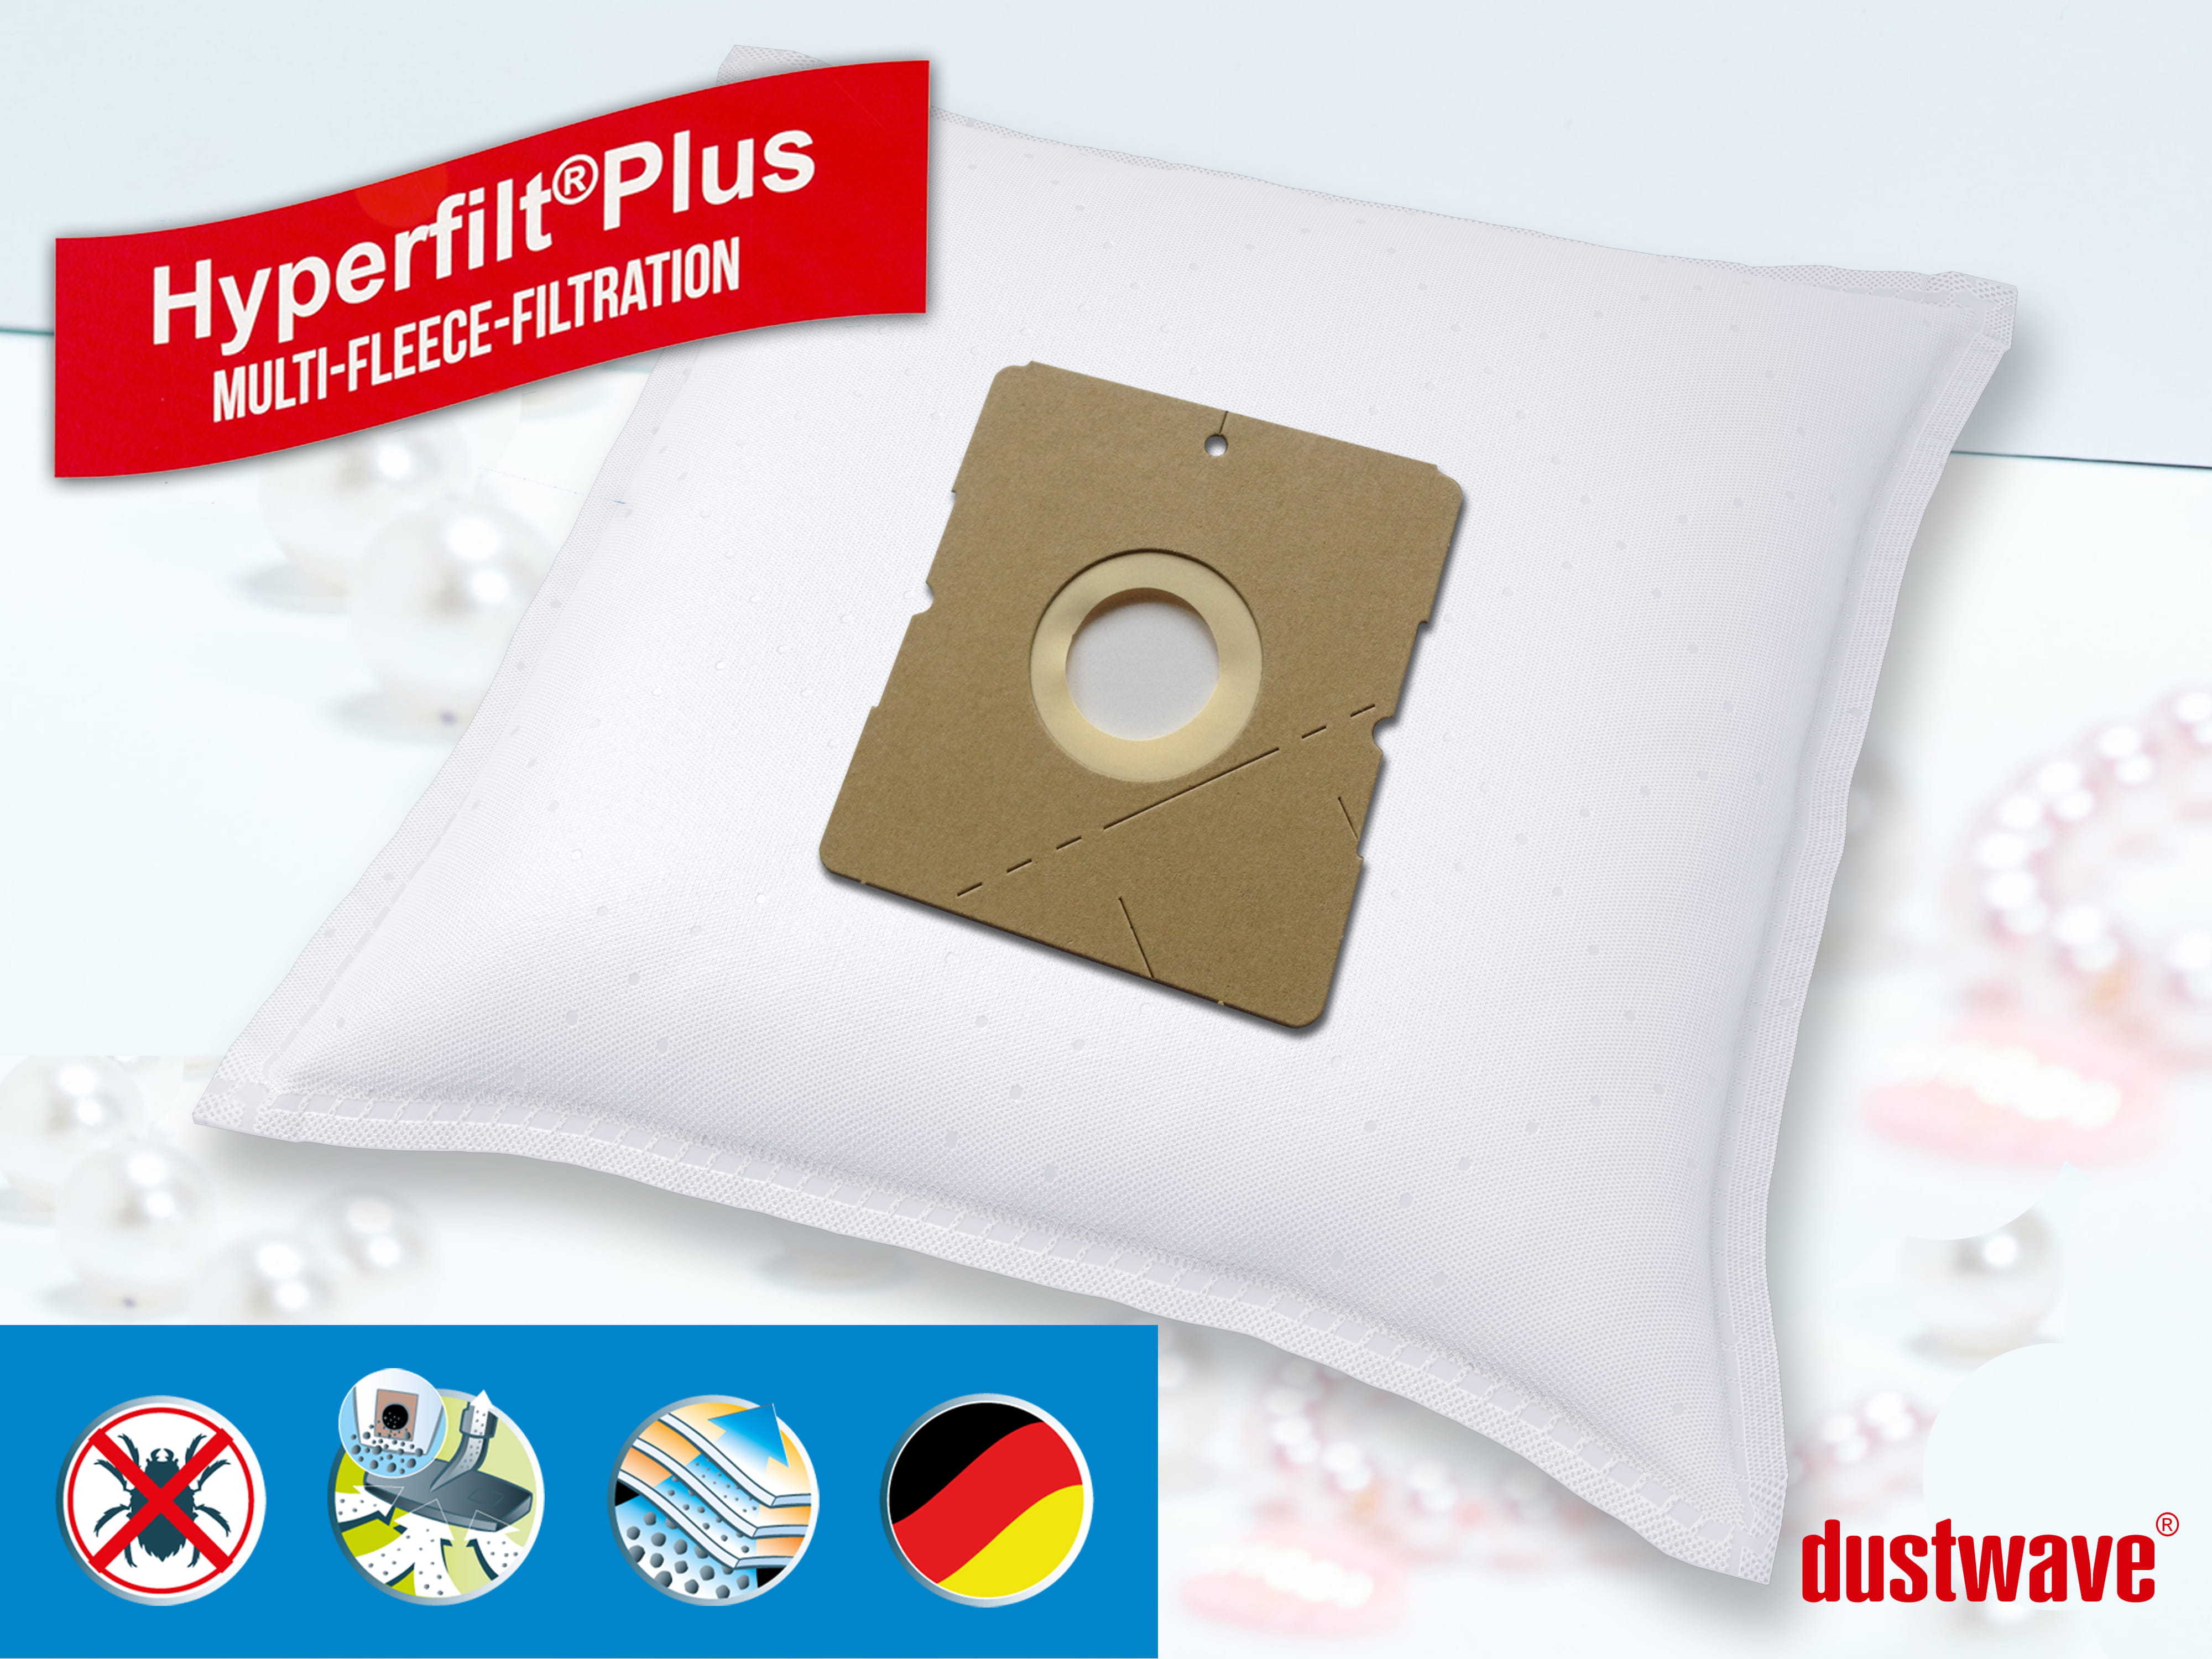 Dustwave® 10 Staubsaugerbeutel für Hoover SX9560 001 AQUAMAS - hocheffizient, mehrlagiges Mikrovlies mit Hygieneverschluss - Made in Germany